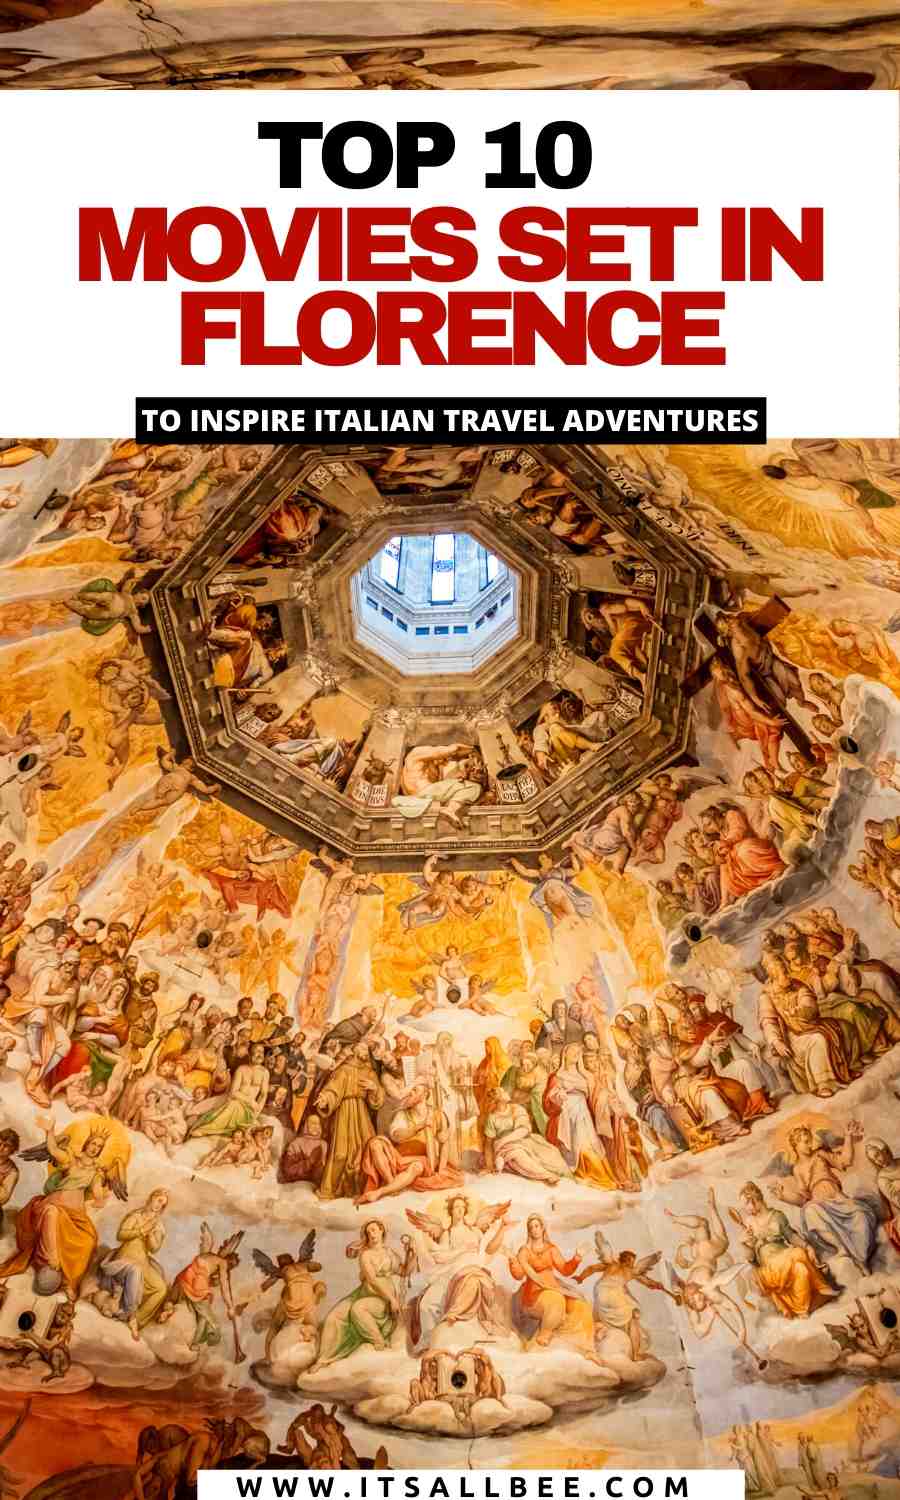 Filmai apie Florenciją